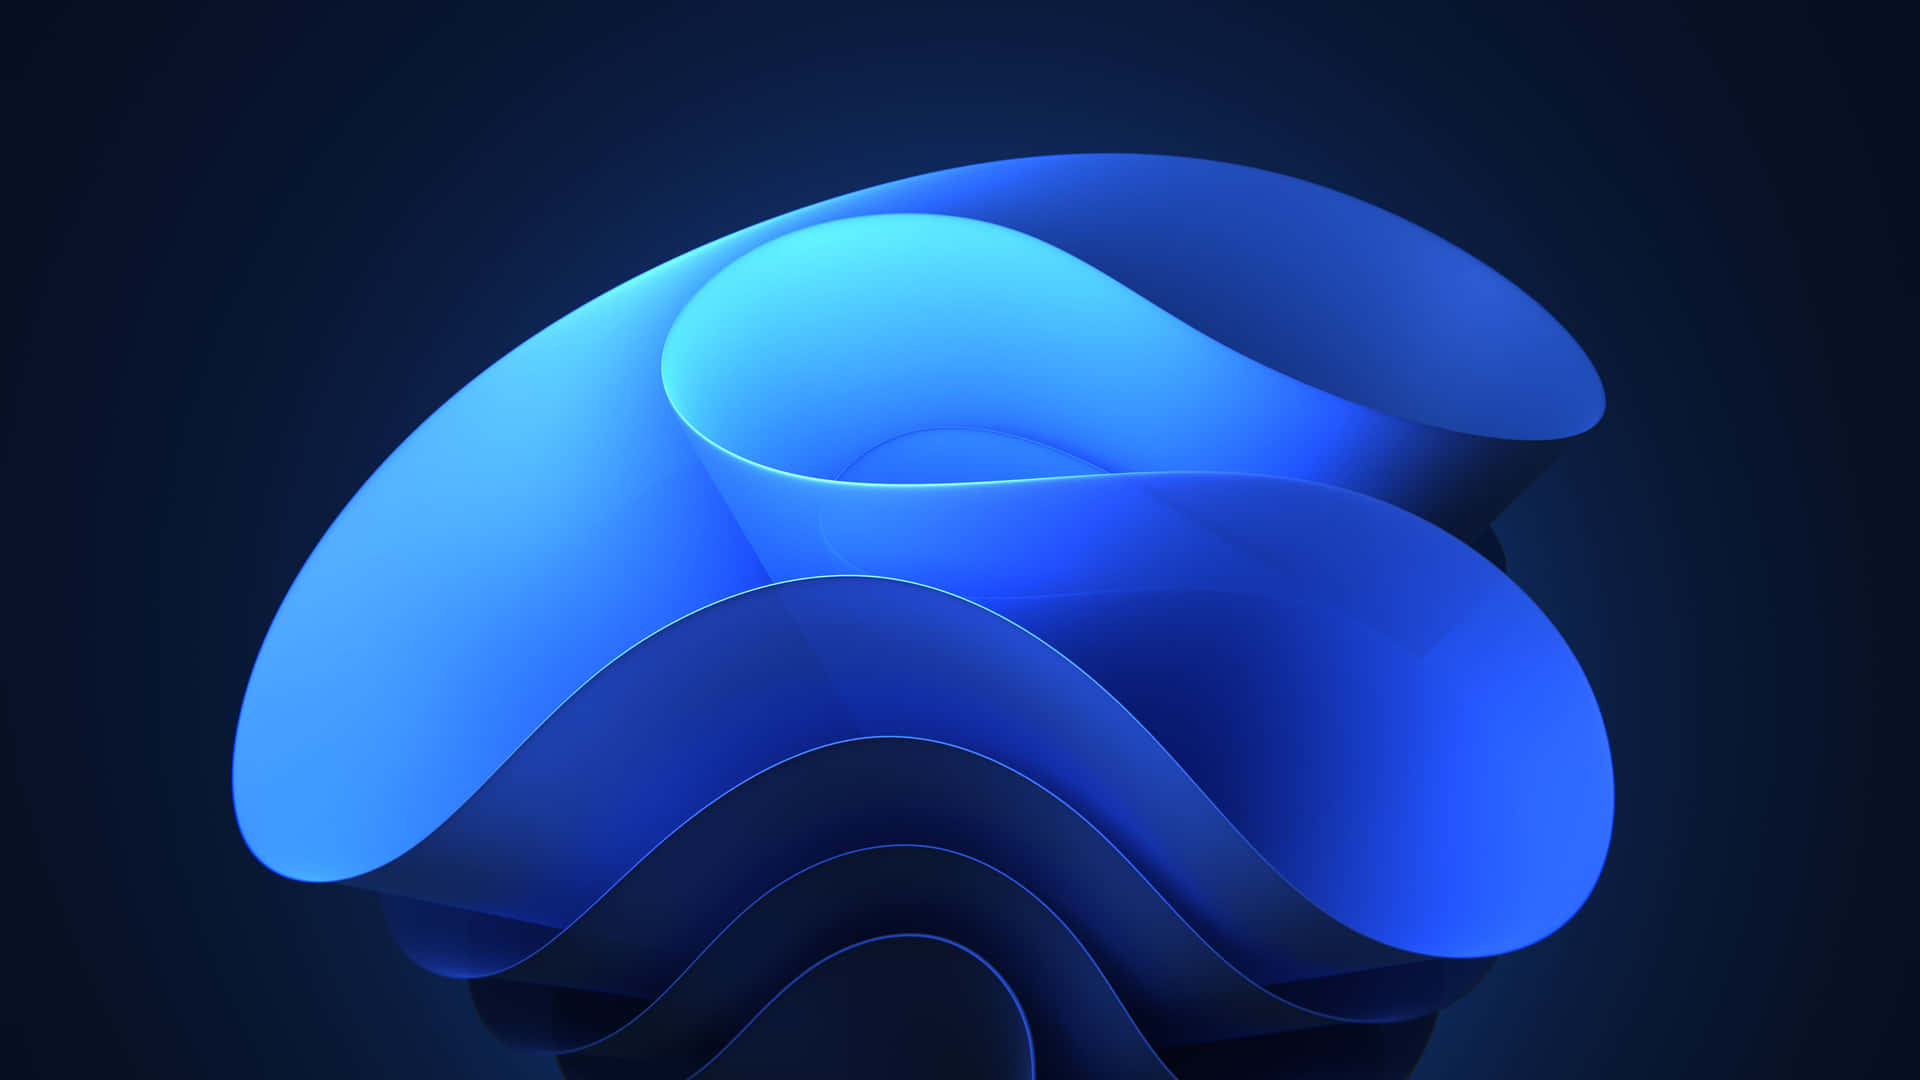 Zweiverschiedene Nuancen Von Blau Und Grau Kommen In Diesem Atemberaubenden Geometrischen Hintergrundbild Zusammen. Wallpaper